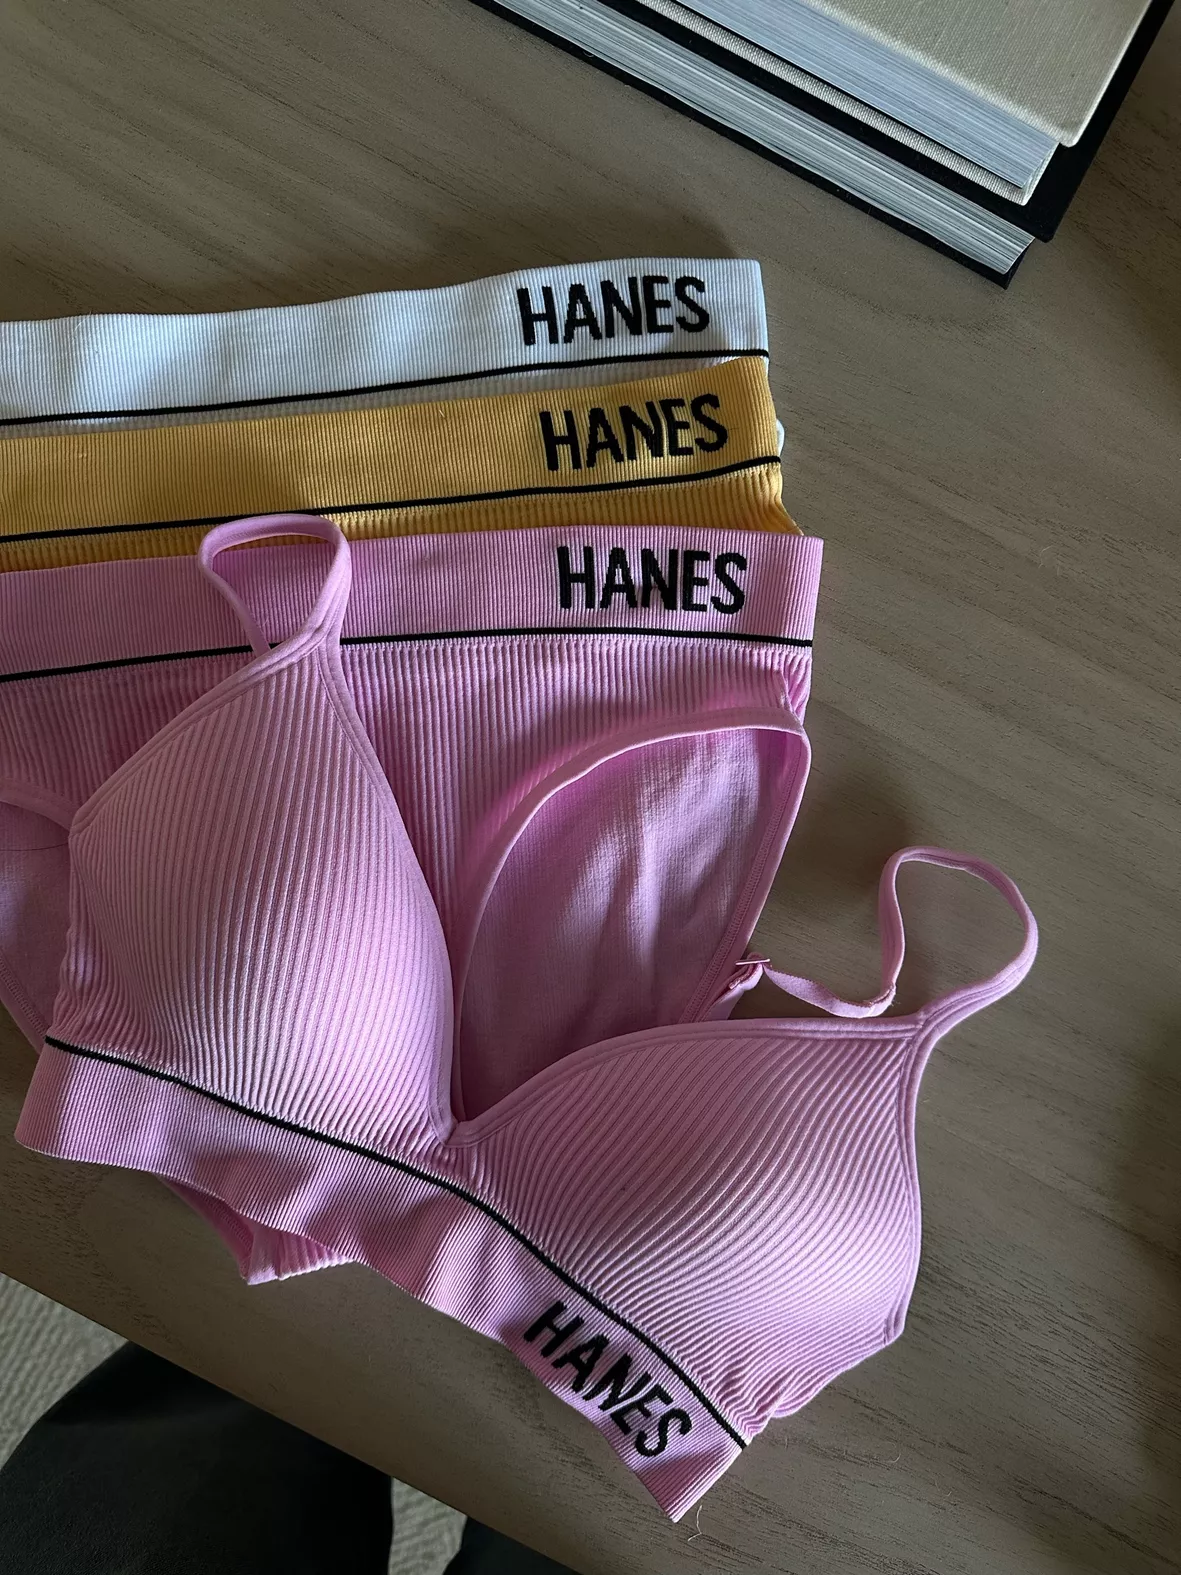 Hanes Originals Women's 6pk Original Hi-cut Briefs - Colors May